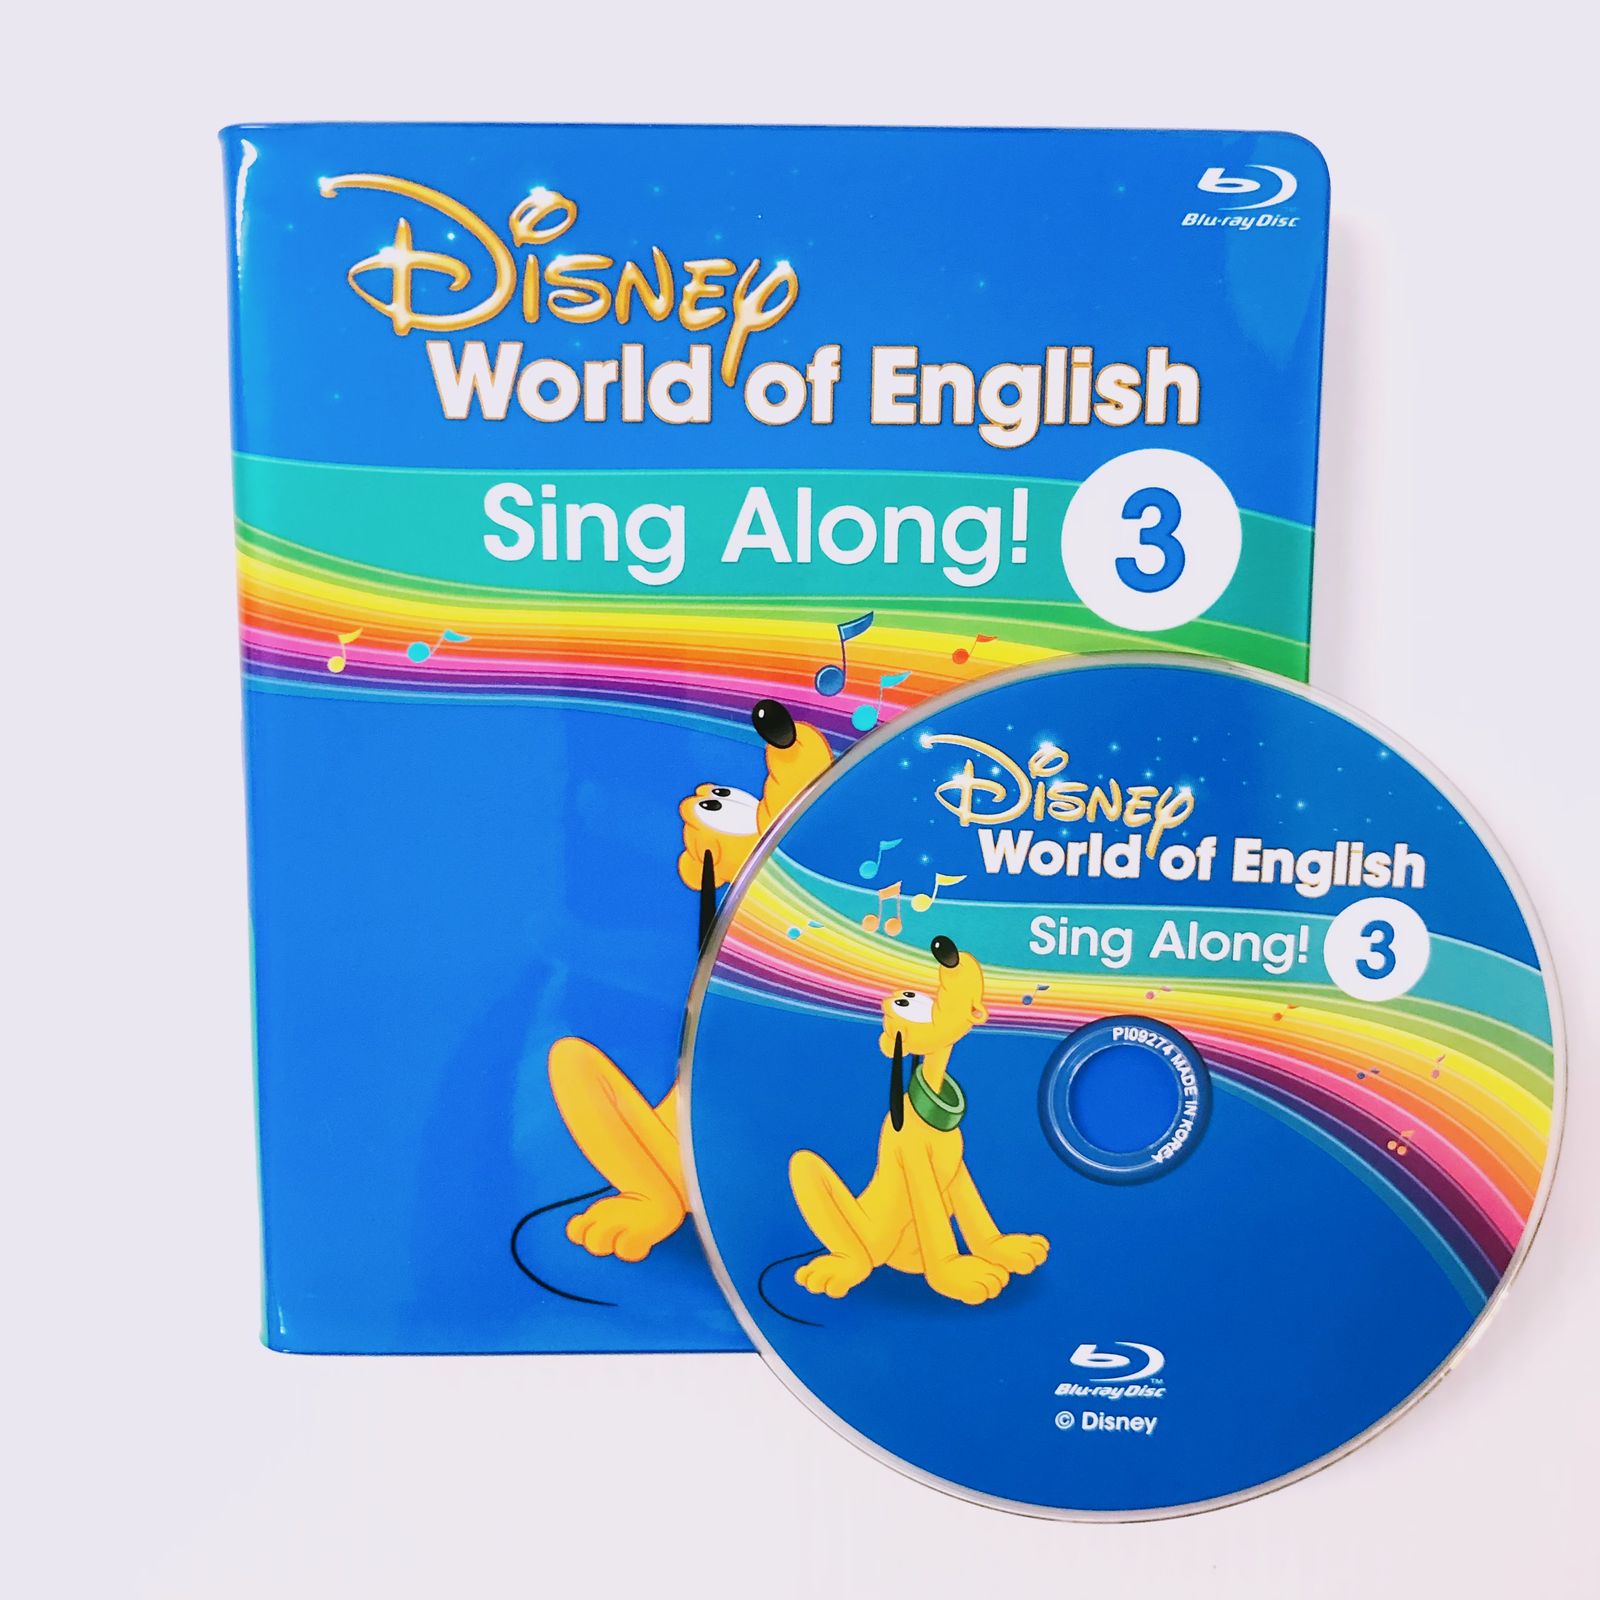 ディズニー英語システム シングアロング Blu-ray 2巻  b-753